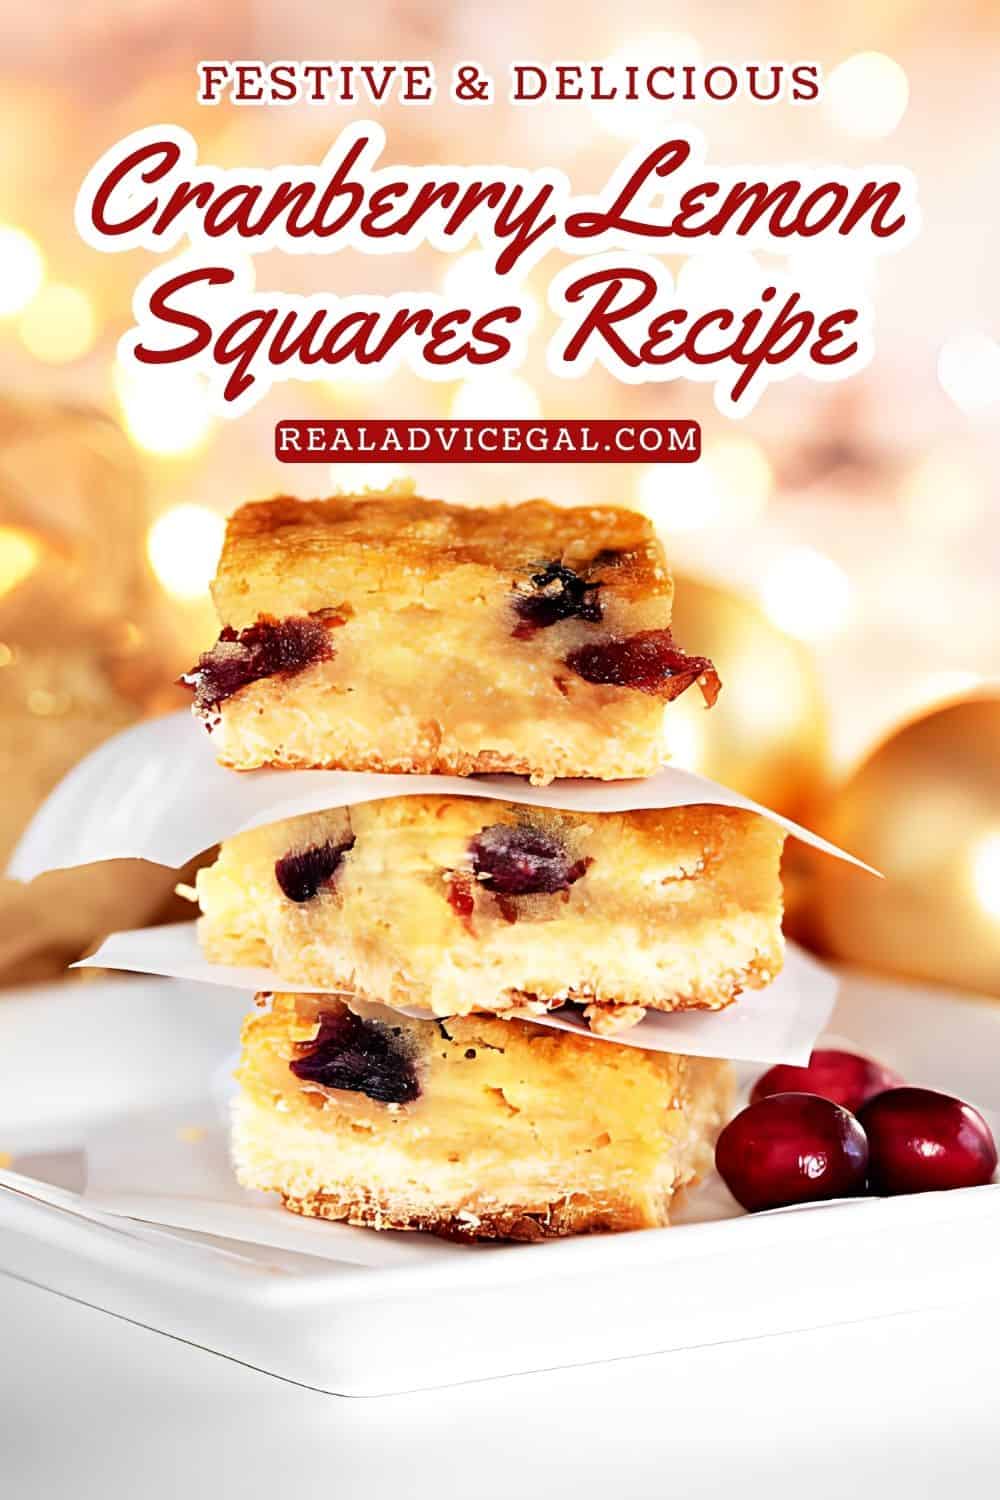 Holiday cranberry lemon squares recipe